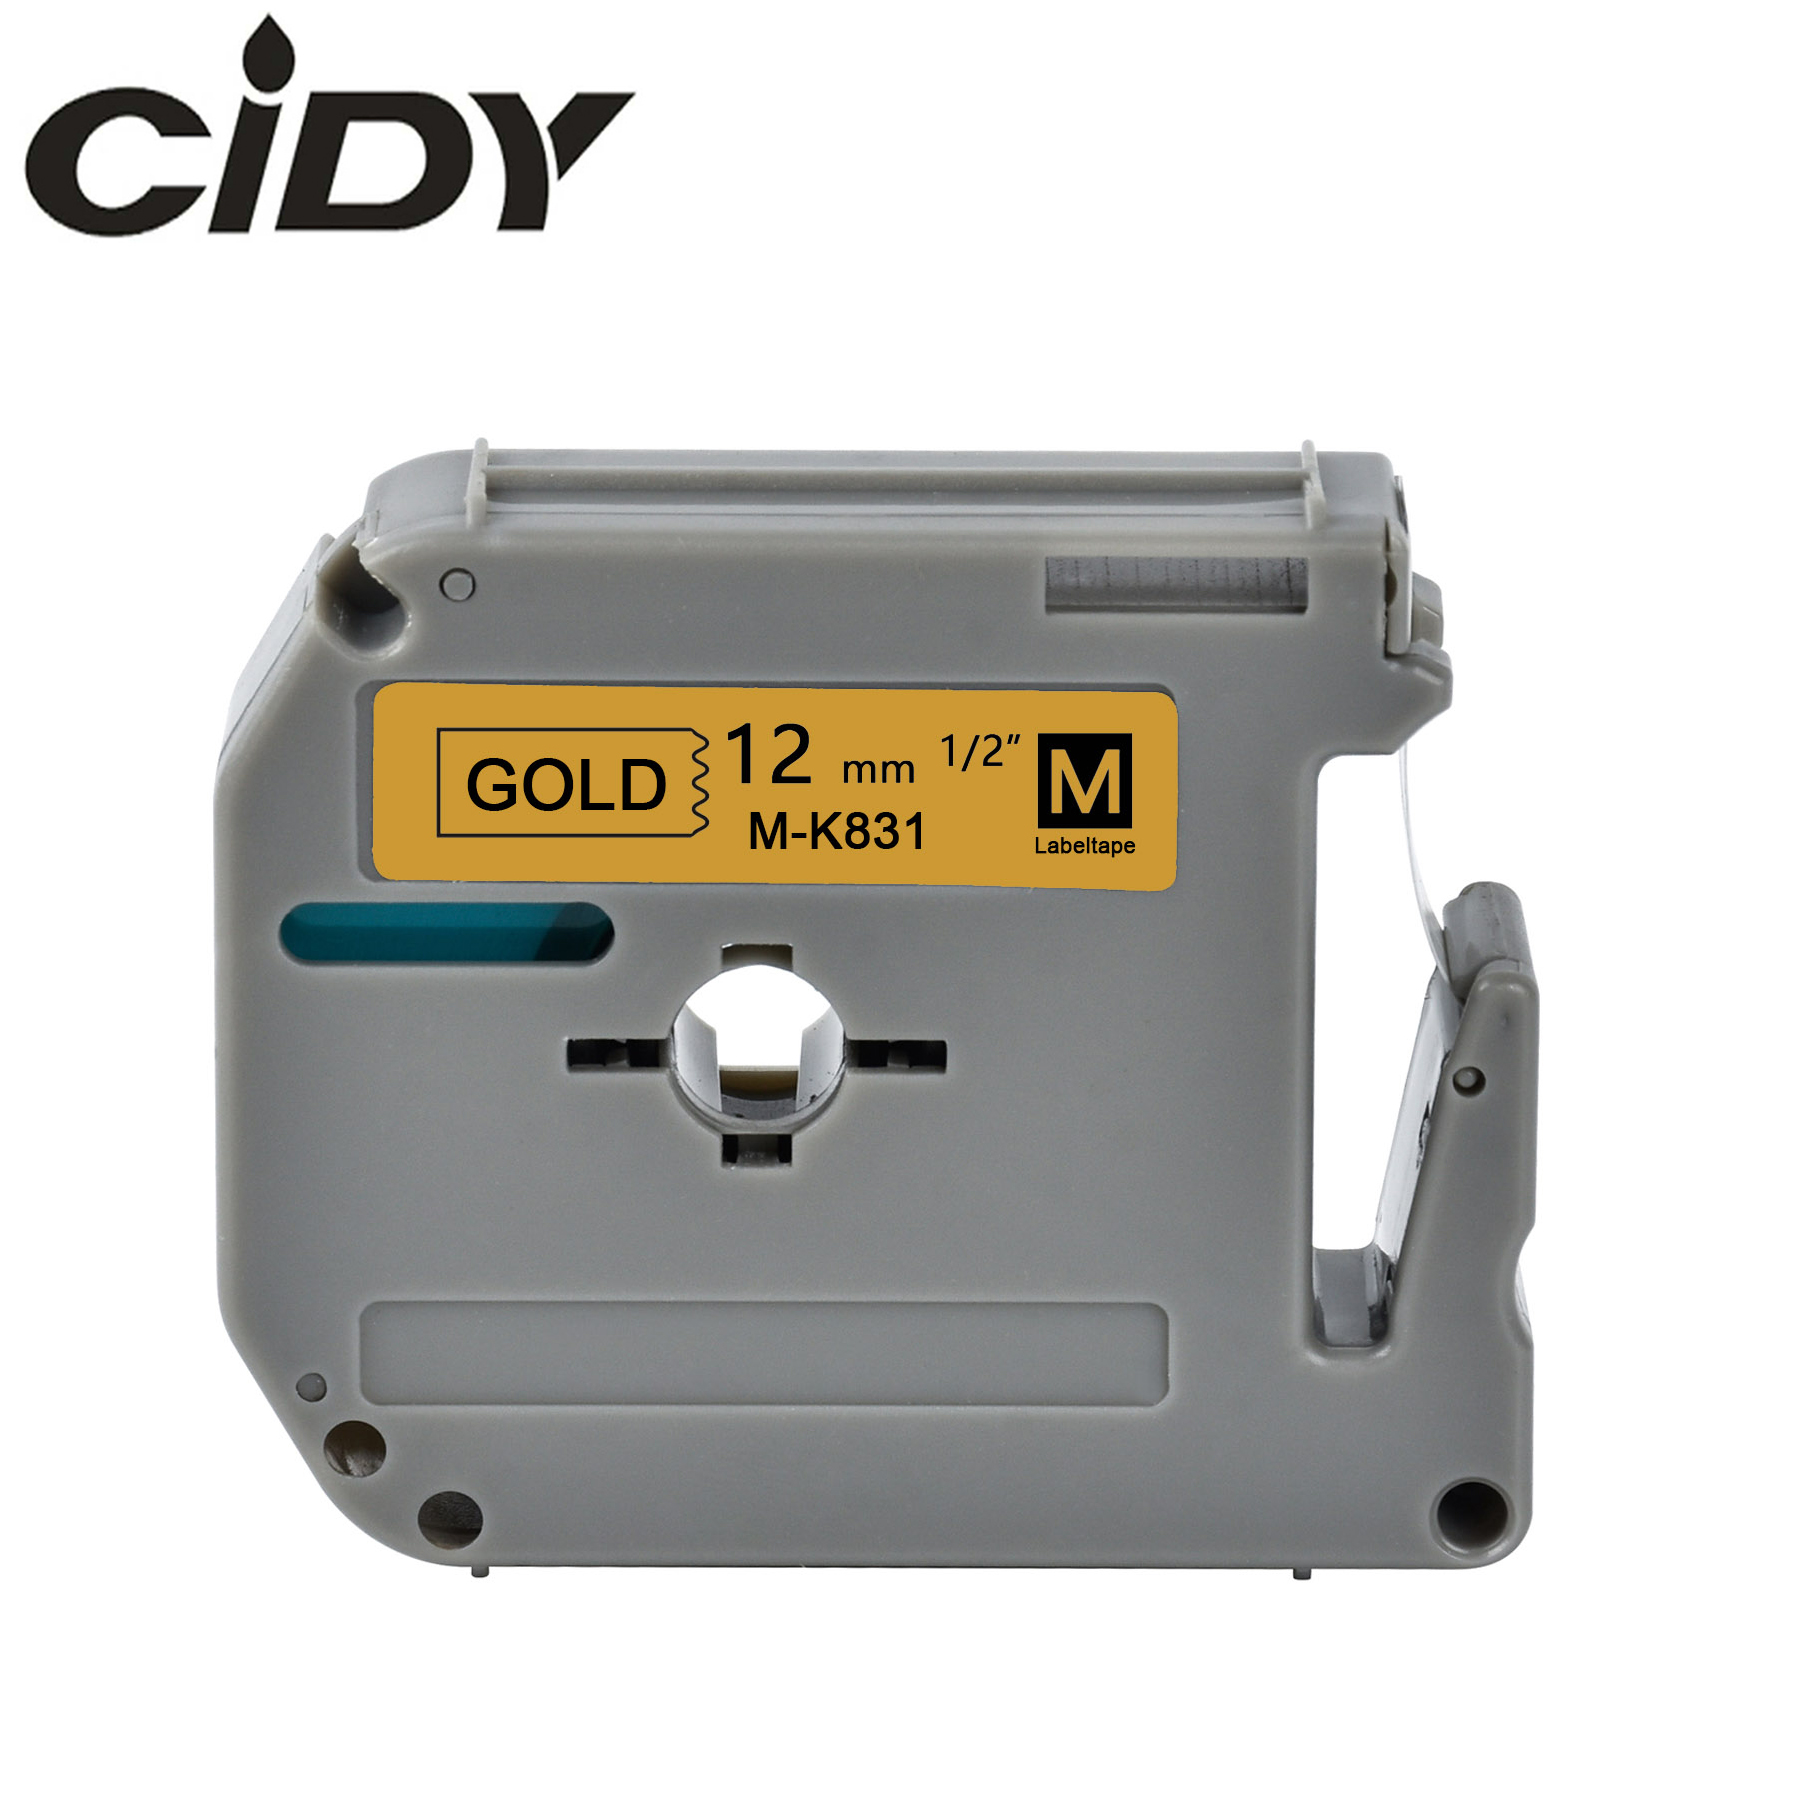 CIDY MK831 MK 831 M-K831 12mm Black on gold label tapes for PT-65 PT-70 PT-80 PT-90 PT-M95 PT-100 PT-110 PT-45M Label Printer